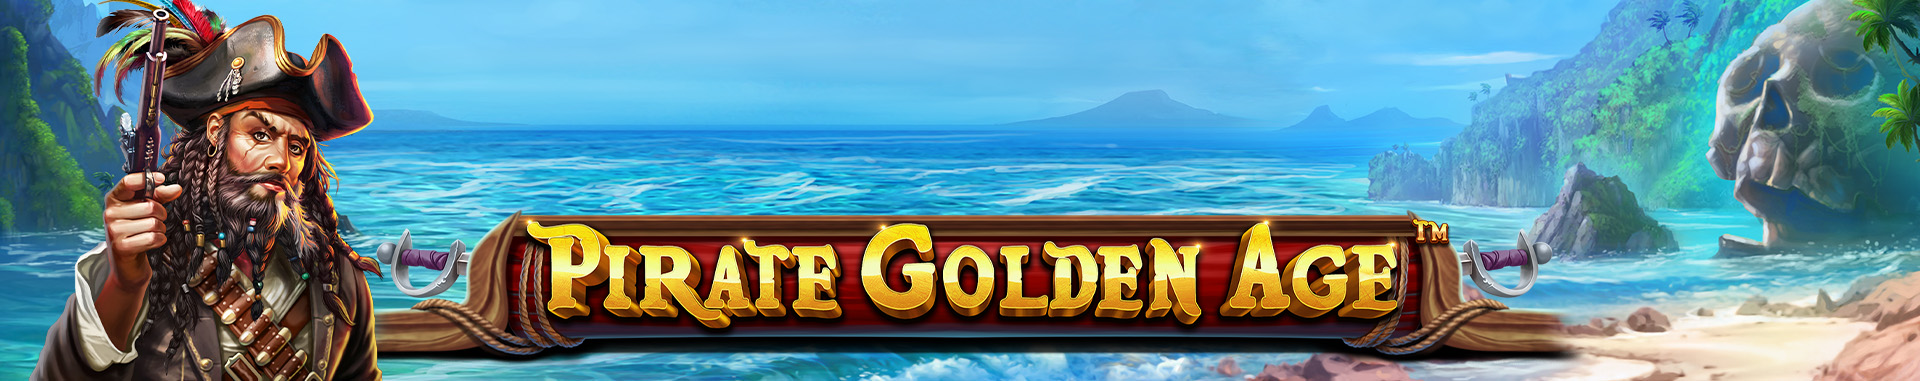 Tragaperras online Pirate Golden Age